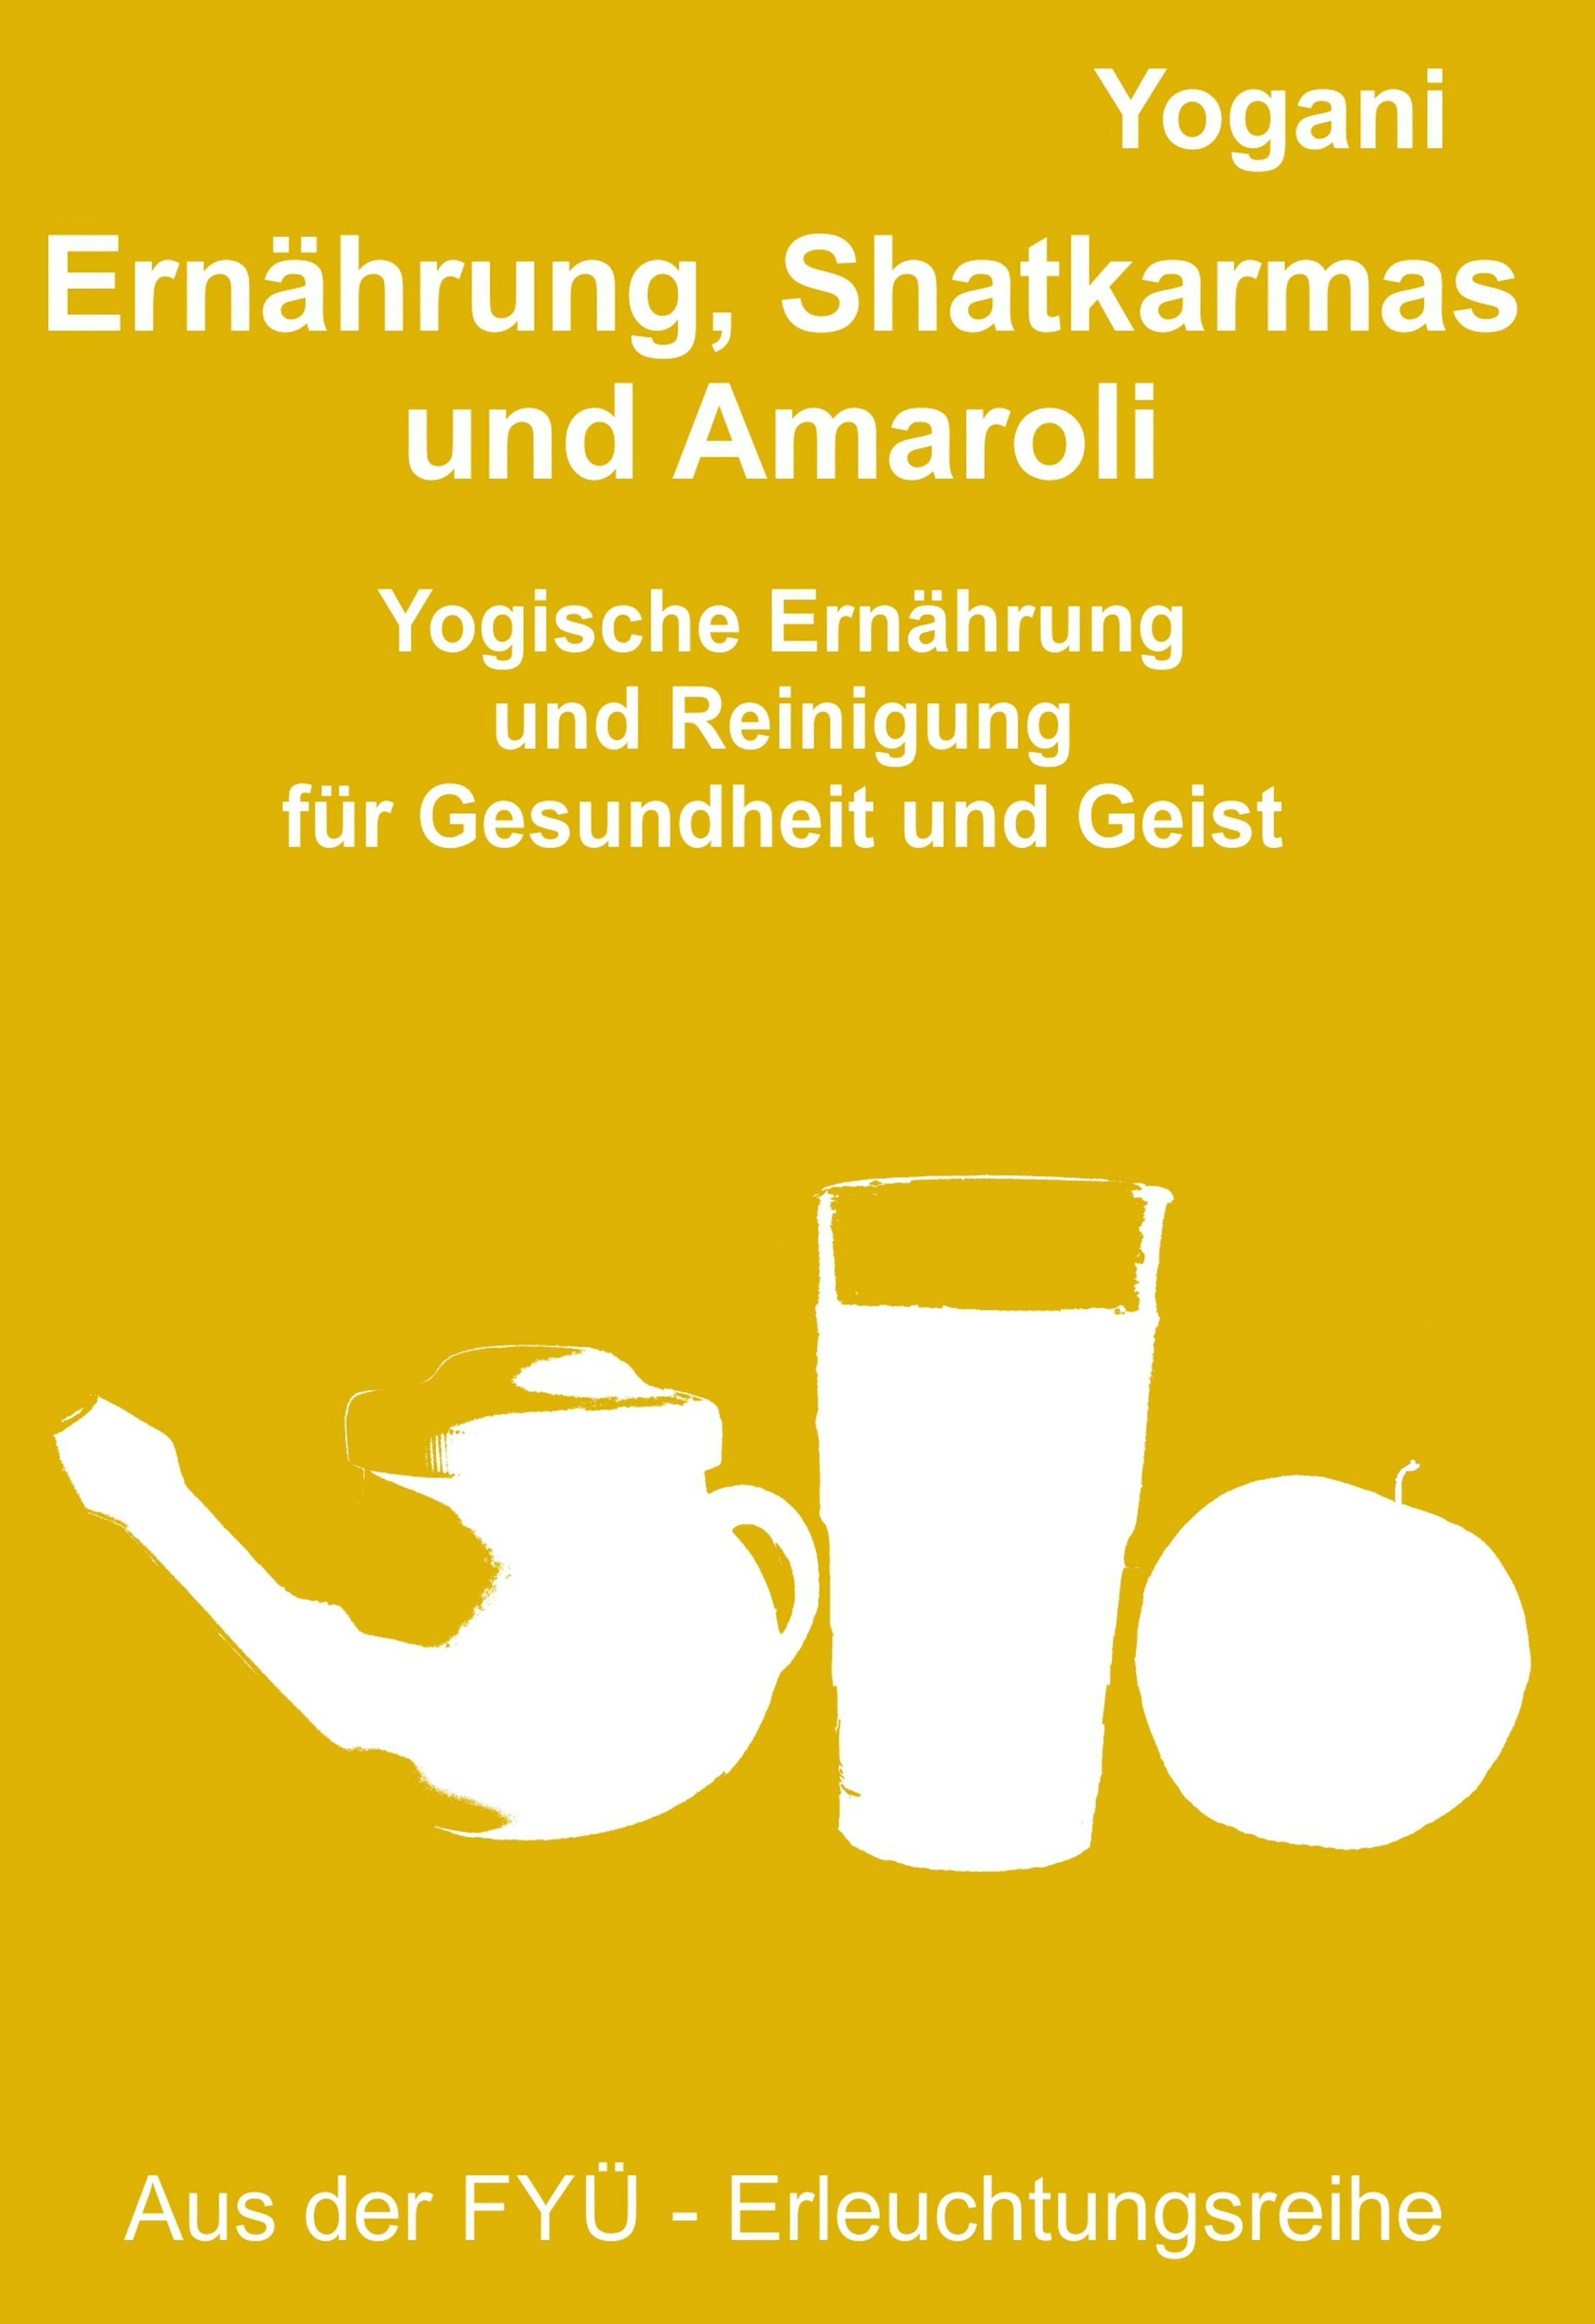 Ernährung, Shatkarmas und Amaroli: Yogische Ernährung und Reinigung für Gesundheit und Geist - Yogani, Bernd Prokop